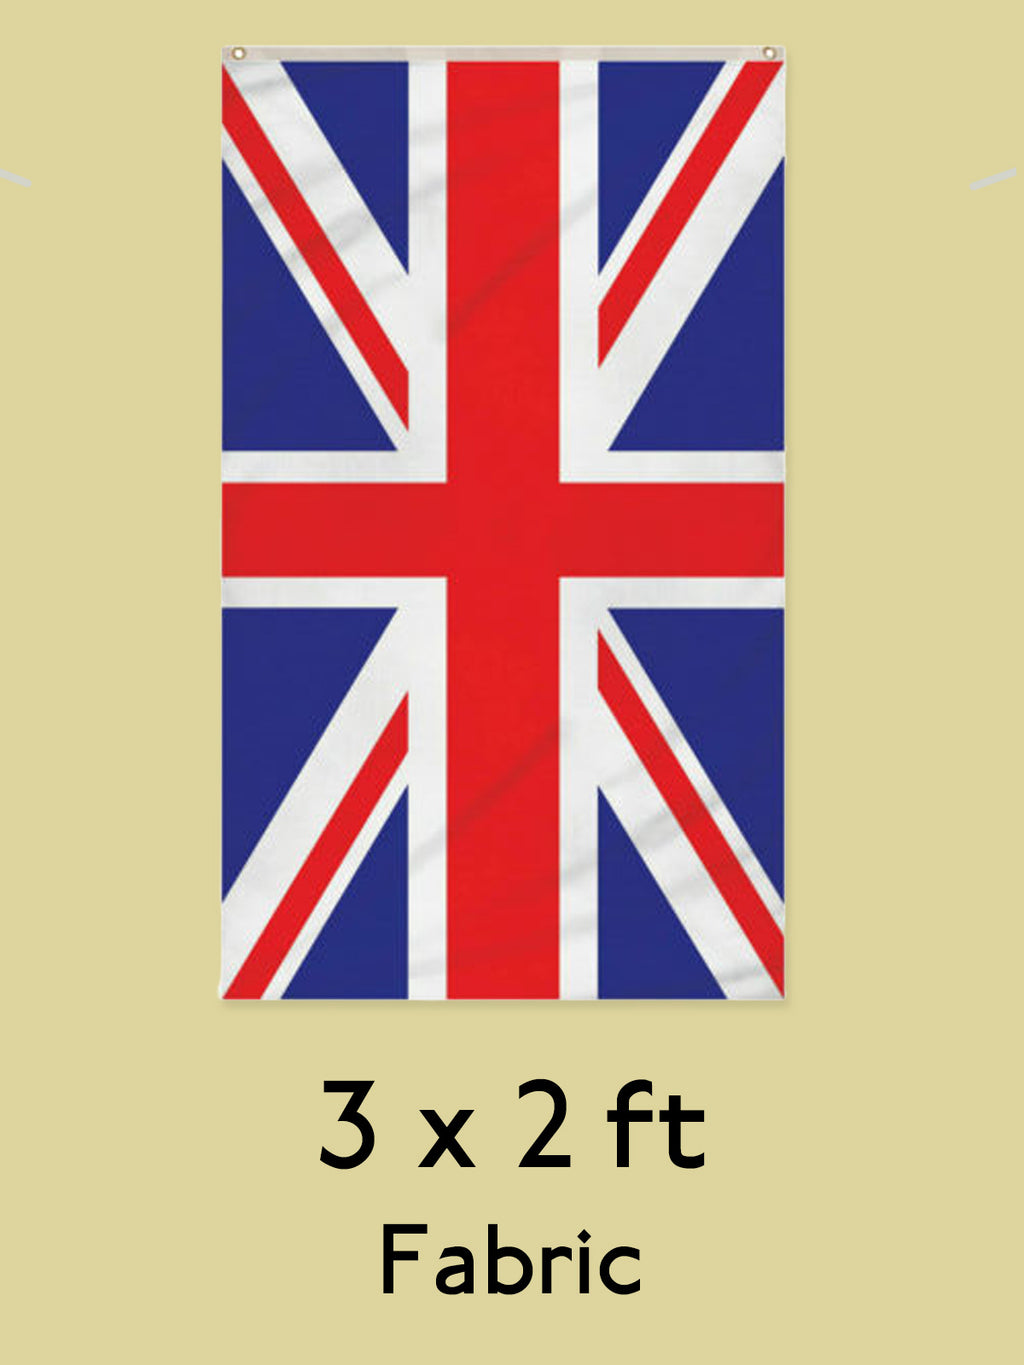 Union Jack Fabric Flag with eyelets - 3 x 2 feet